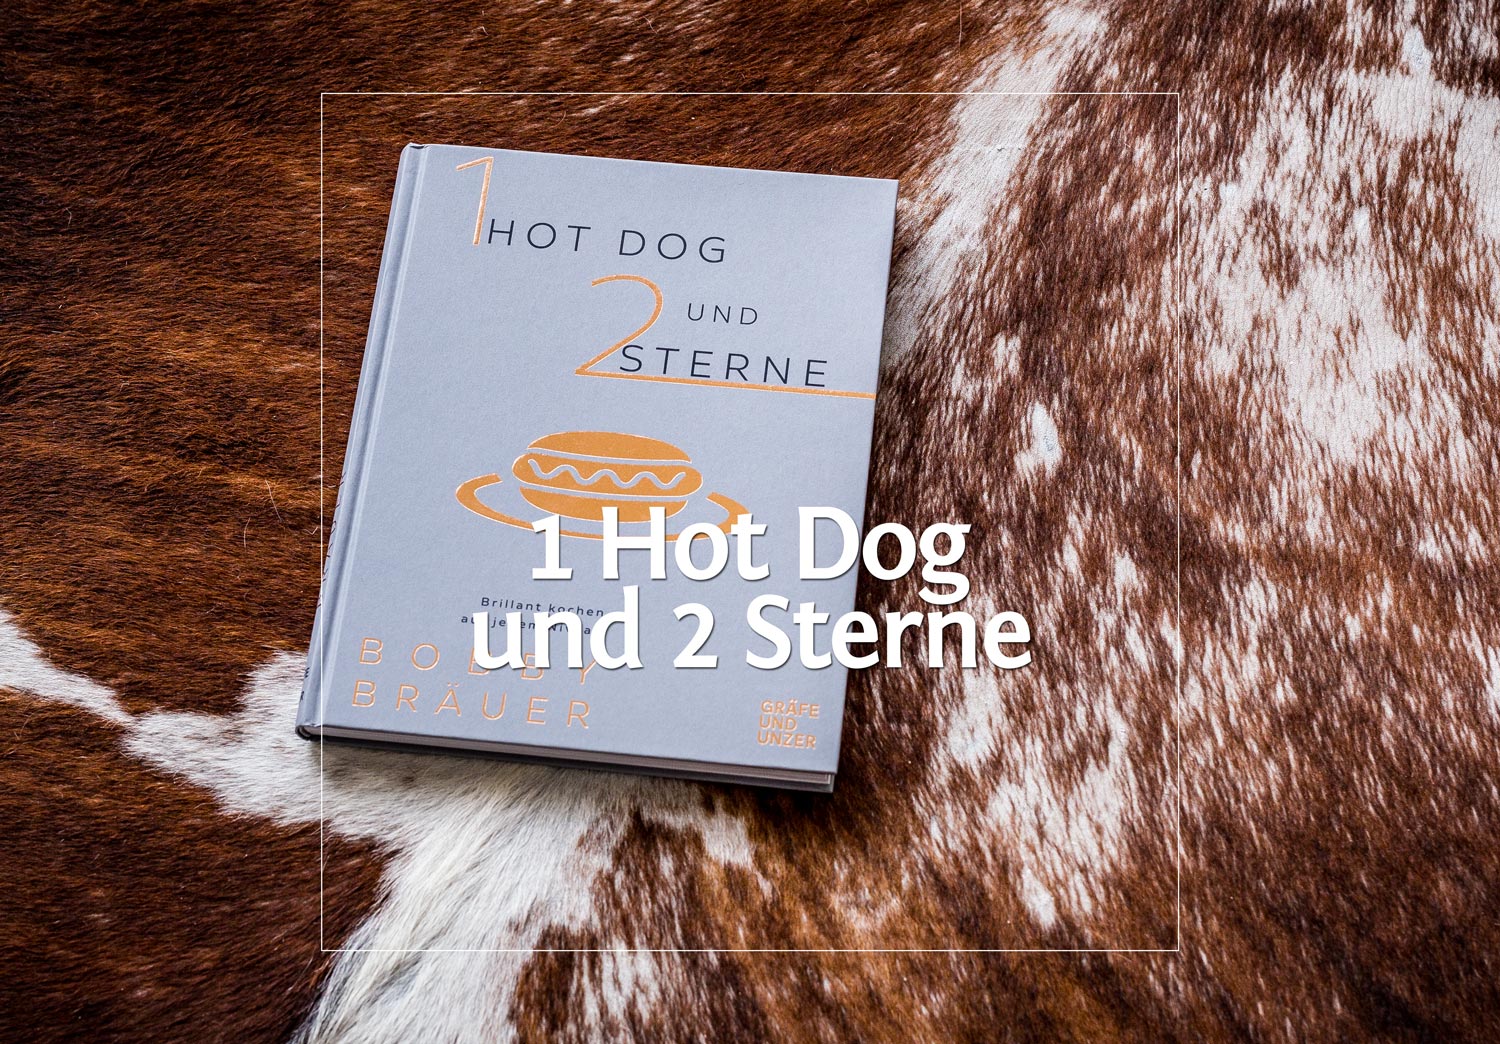 1 Hot Dog und 2 Sterne von Bobby Bräuer